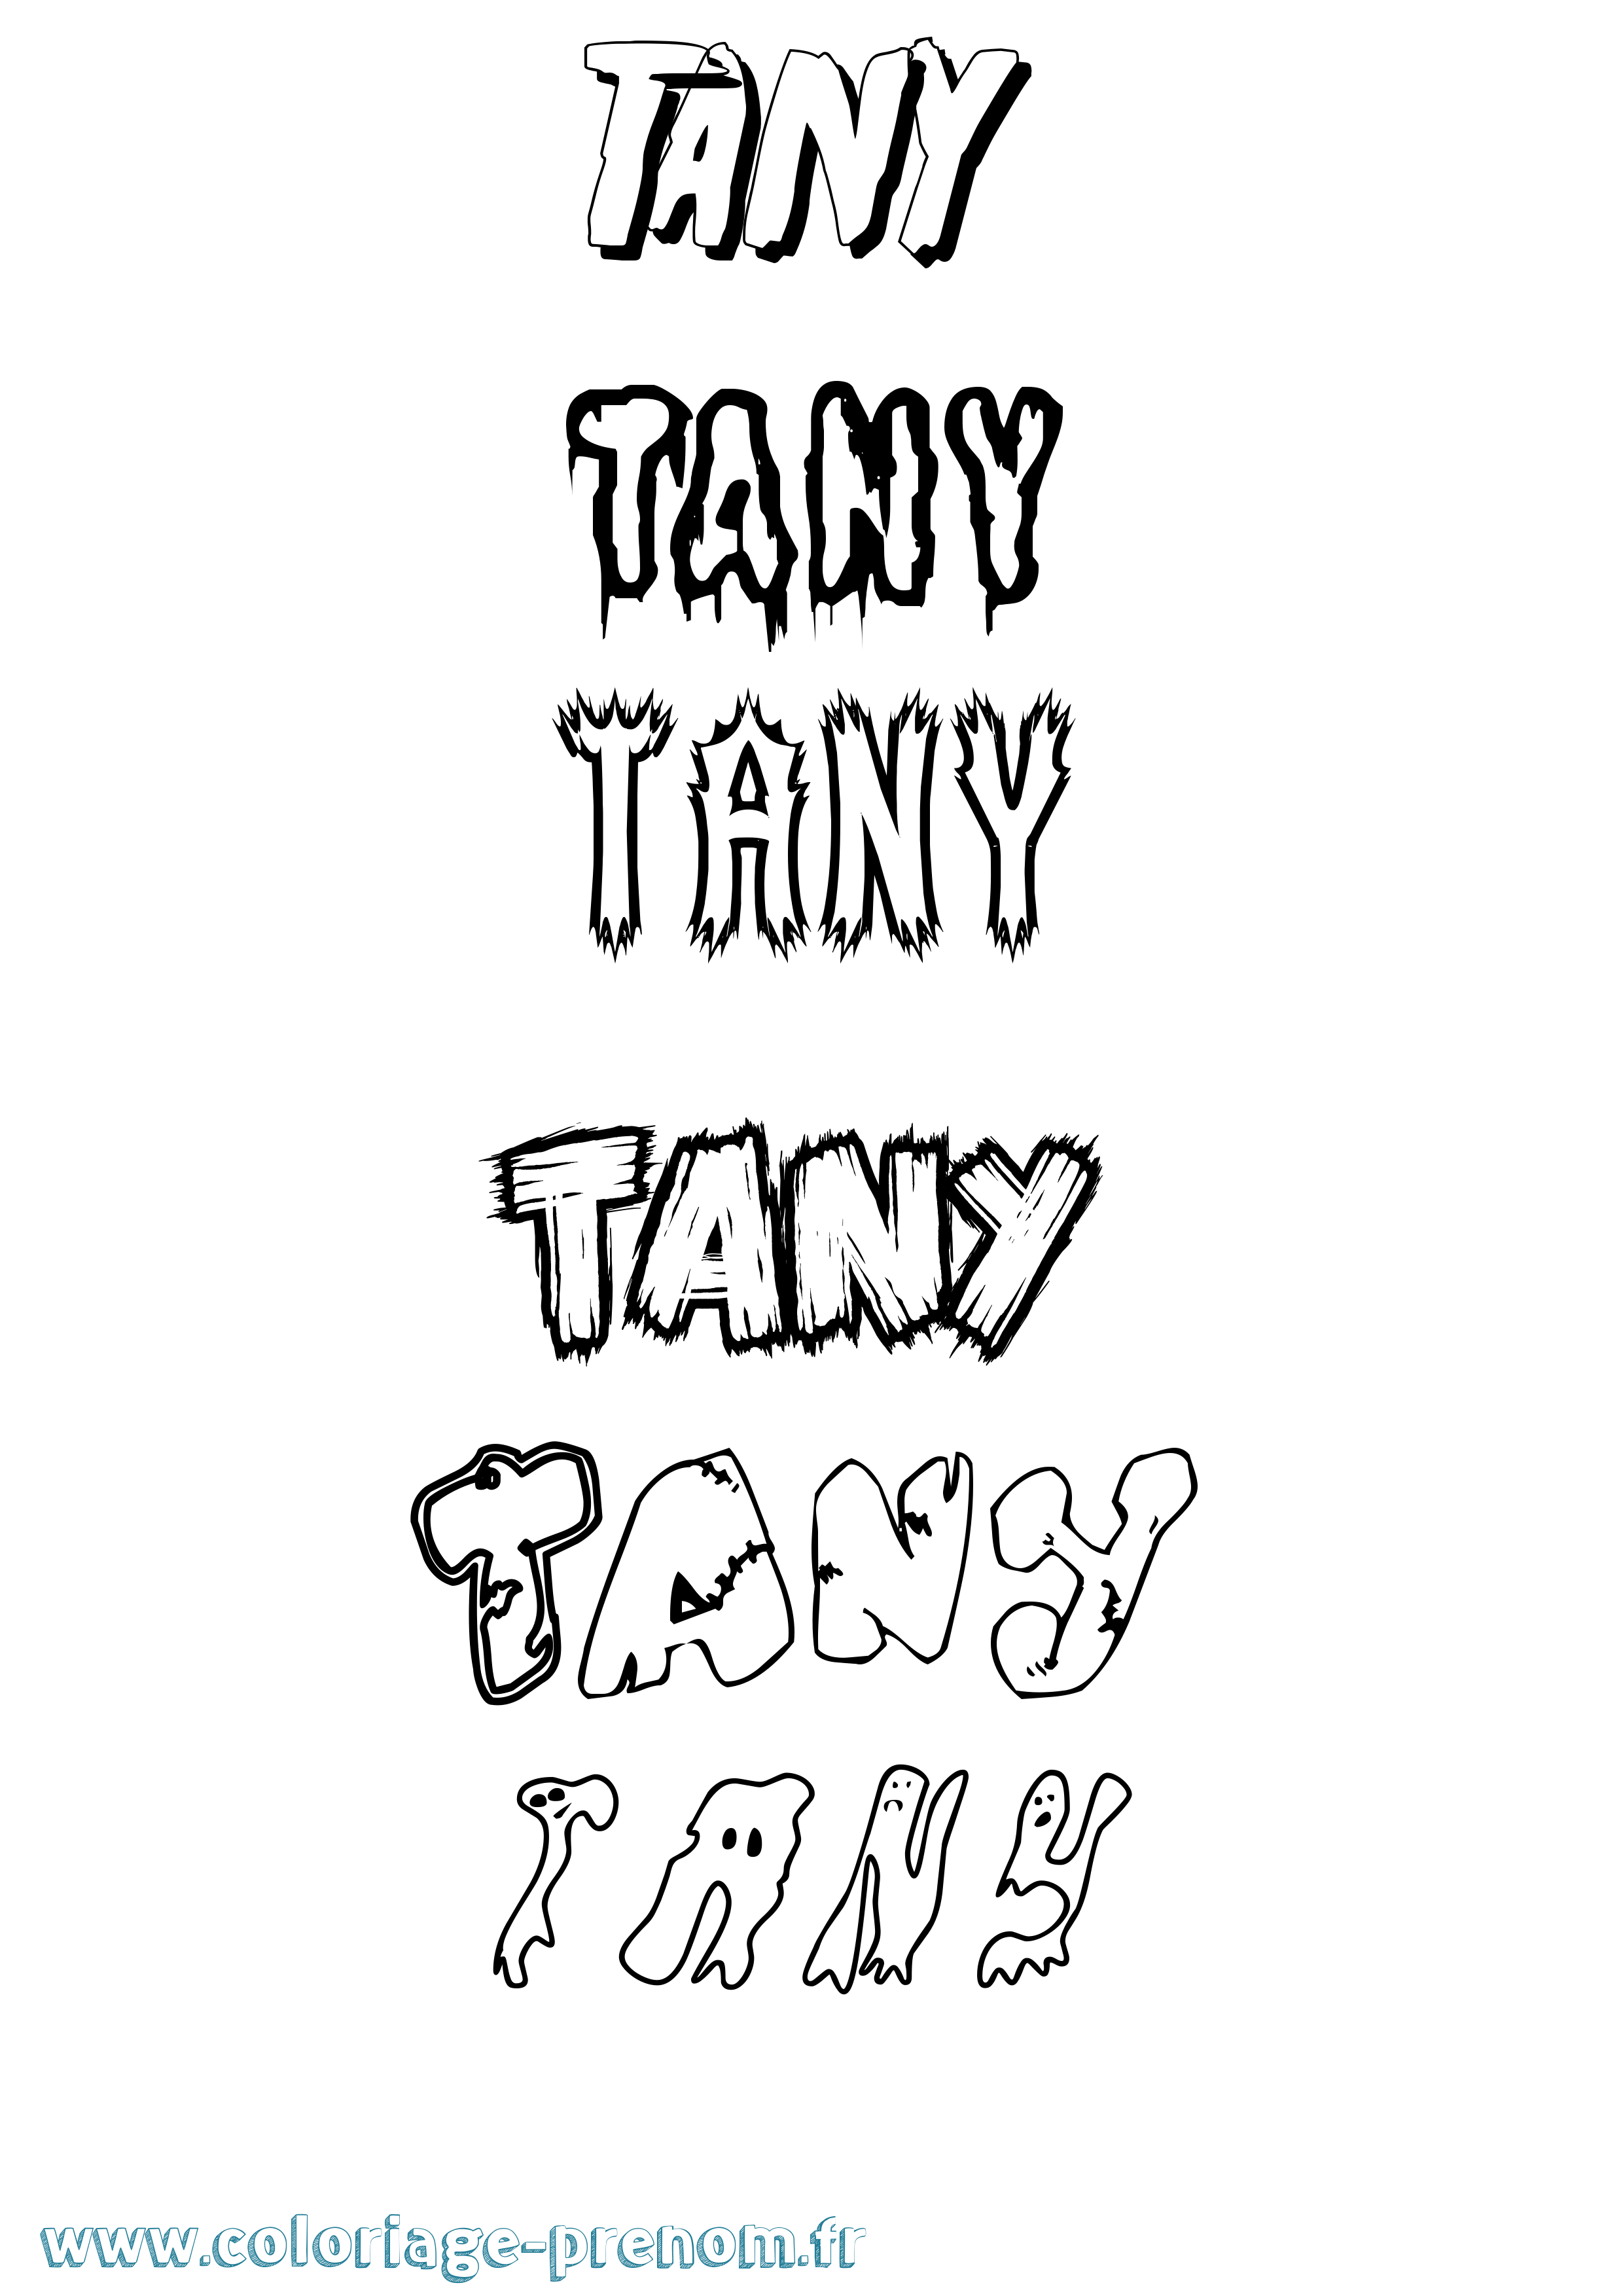 Coloriage prénom Tany Frisson